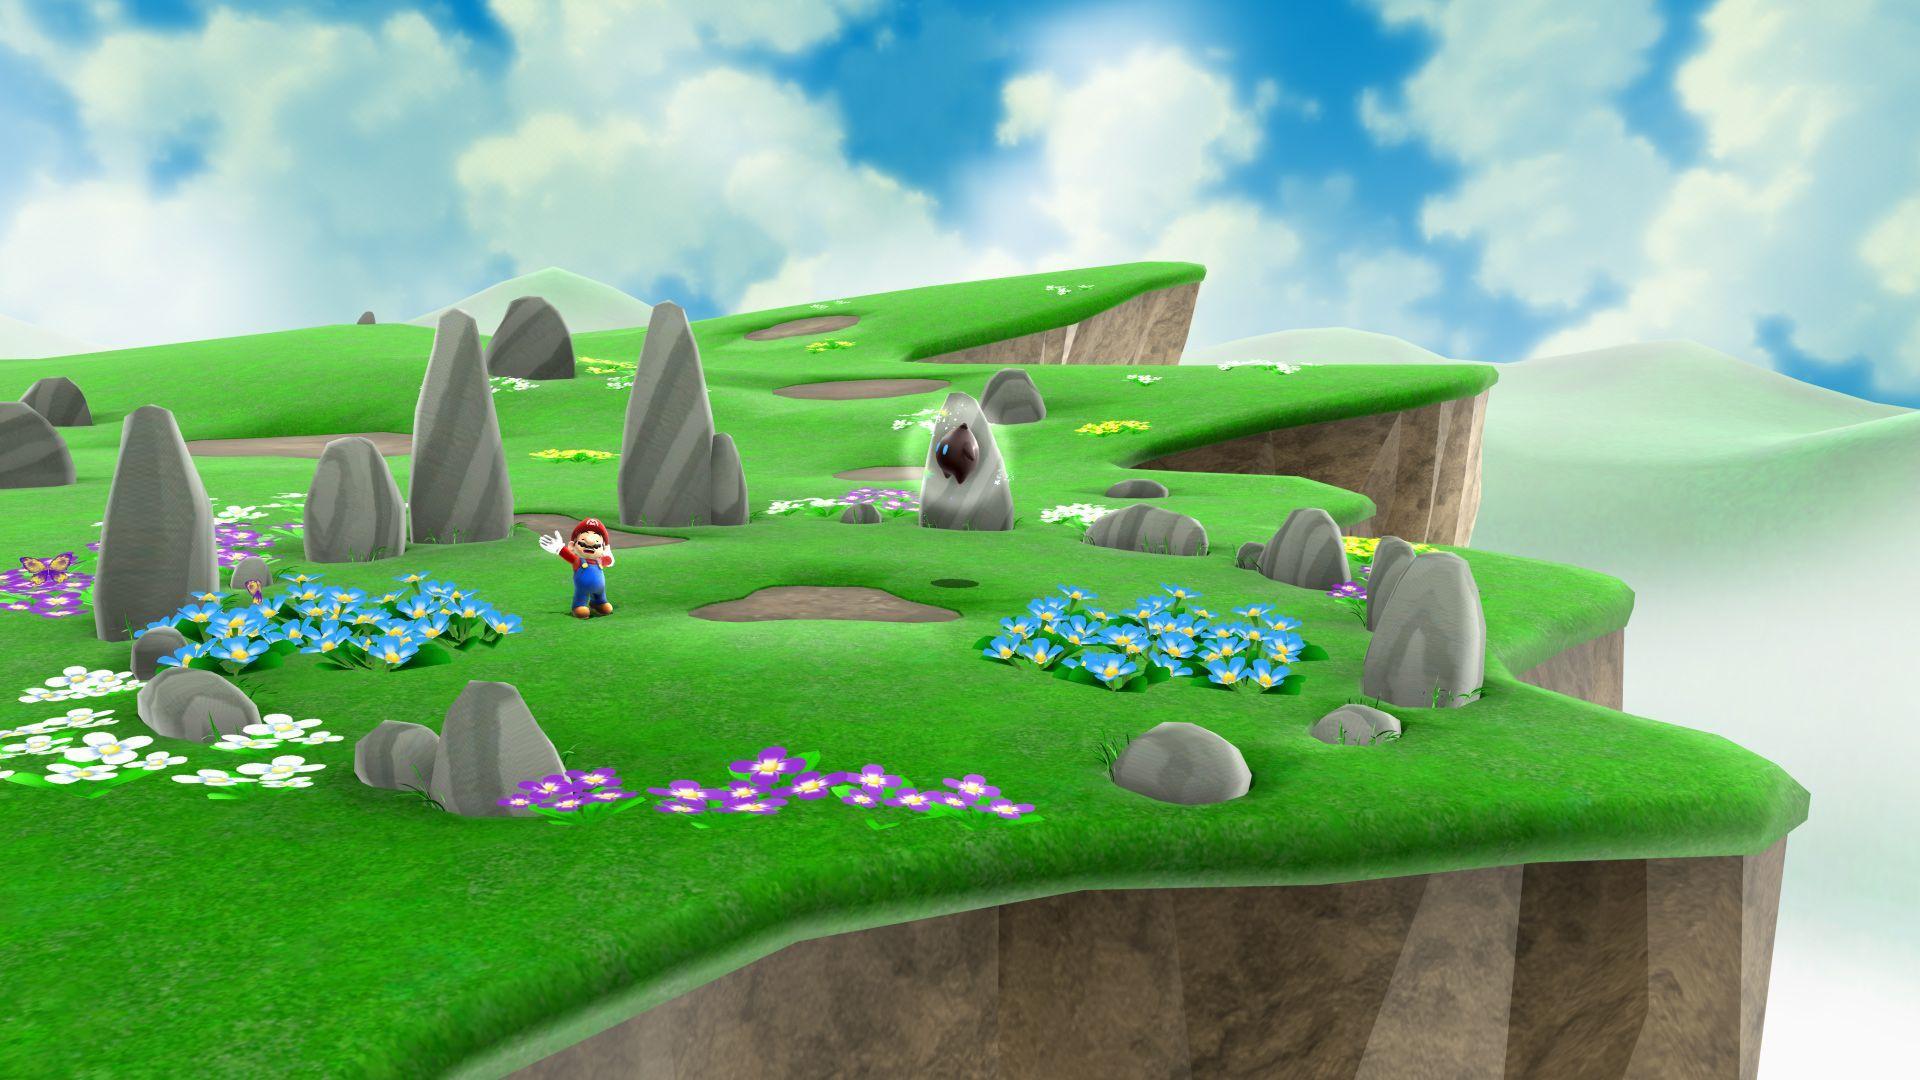 Super Mario 3D là một trong những phiên bản được yêu thích nhất của loạt game Mario. Hình ảnh liên quan sẽ cho bạn cái nhìn tổng quan về cảnh đẹp và những chặng đua nghẹt thở trong trò chơi này.